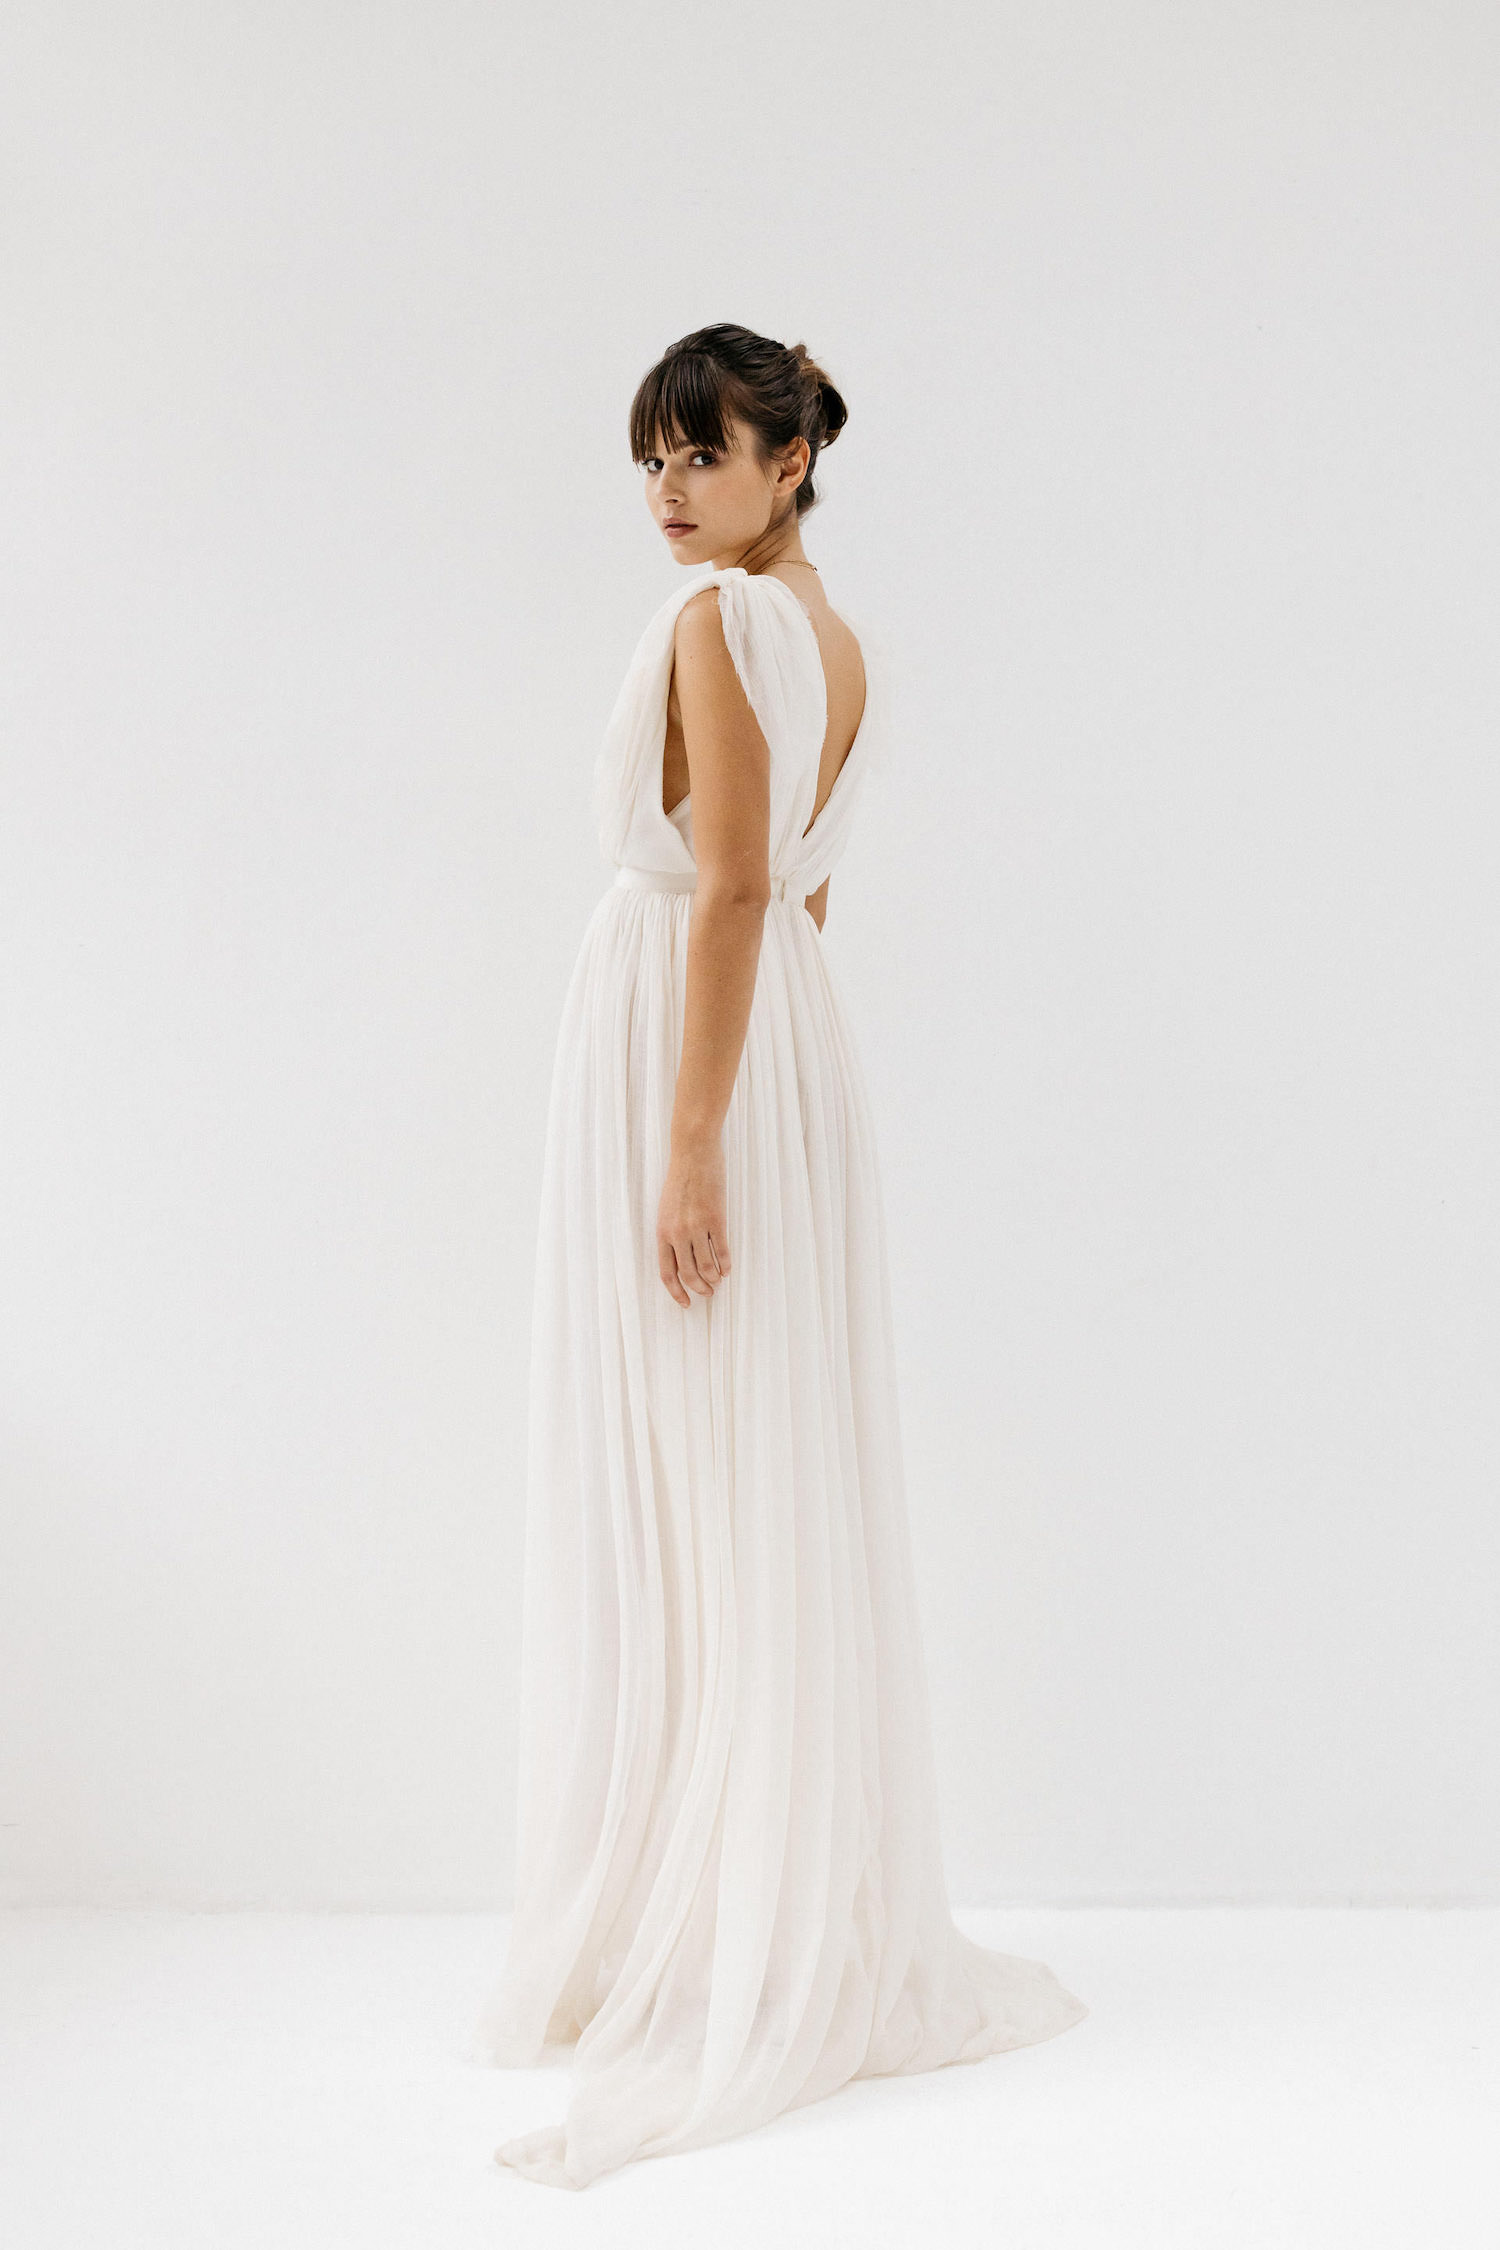 Meraki-Paris Collection 2021 - Robes de mariée - Blog Mariage Madame C